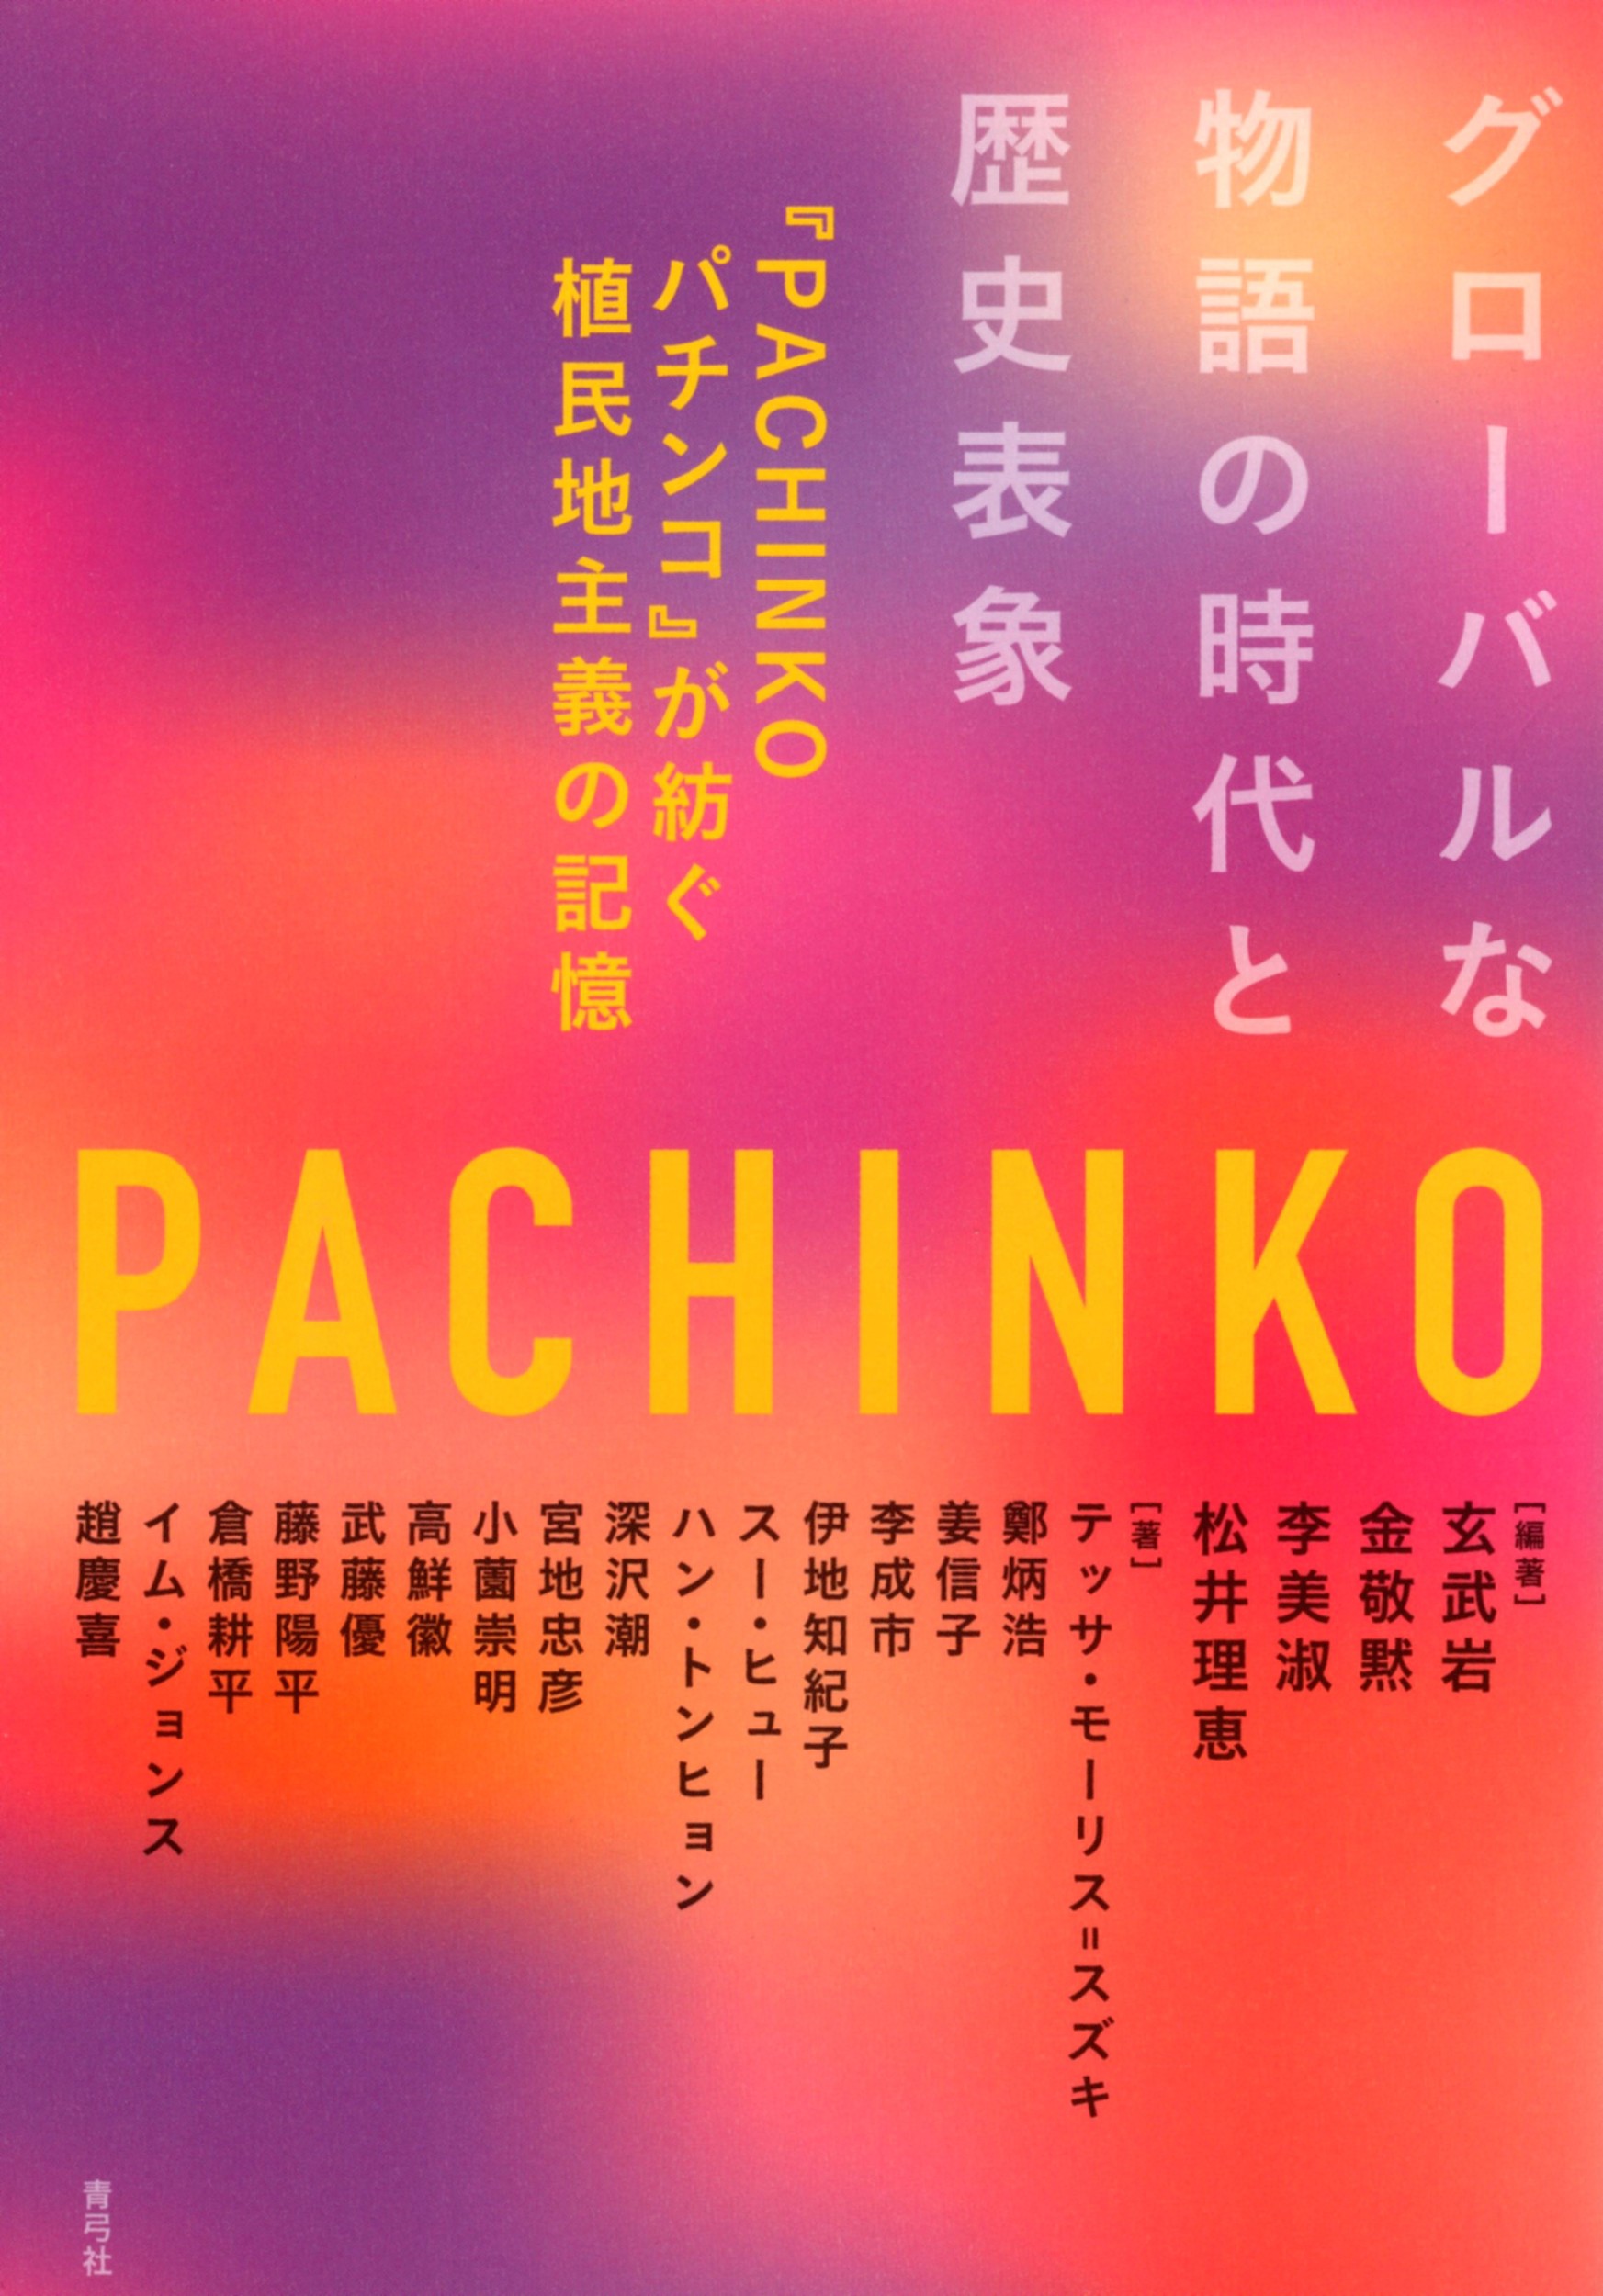 グローバルな物語の時代と歴史表象：『PACHINKOパチンコ』が紡ぐ植民地主義の記憶